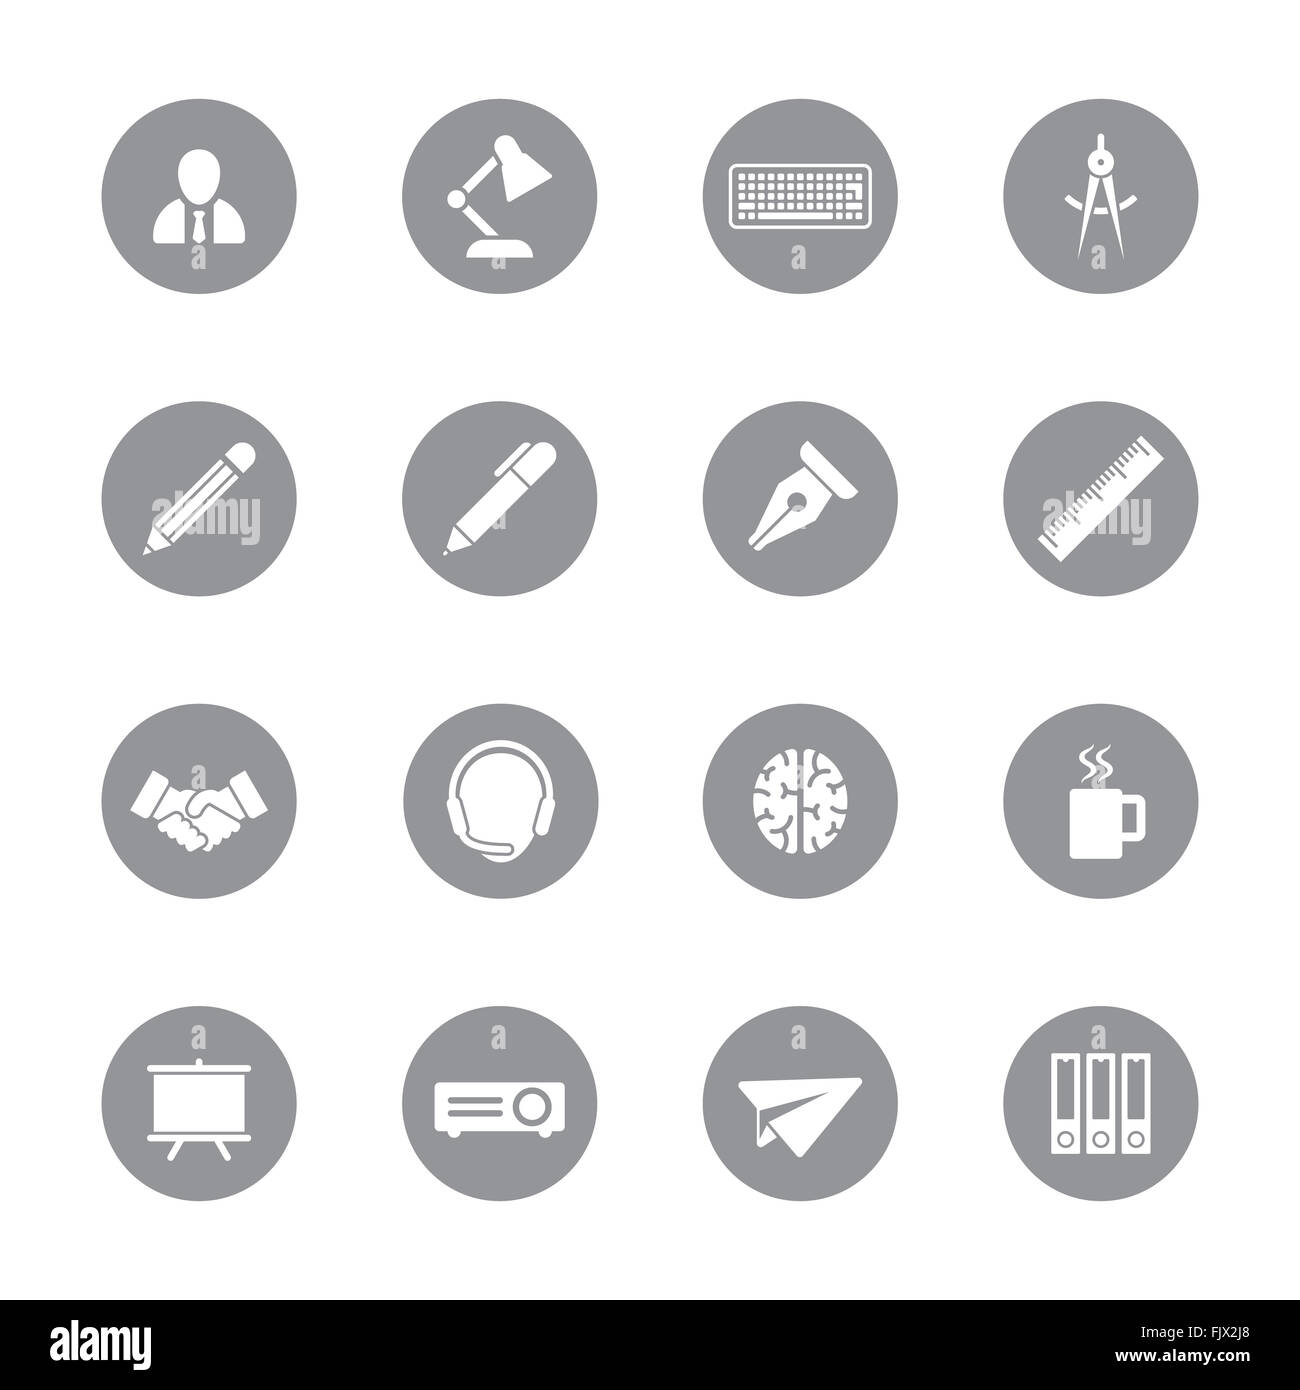 [JPEG] graue flache Icon-Set 8 auf Kreis für Web-Design, User-Interface (UI), Infografik und mobilen Anwendungen (apps) Stockfoto